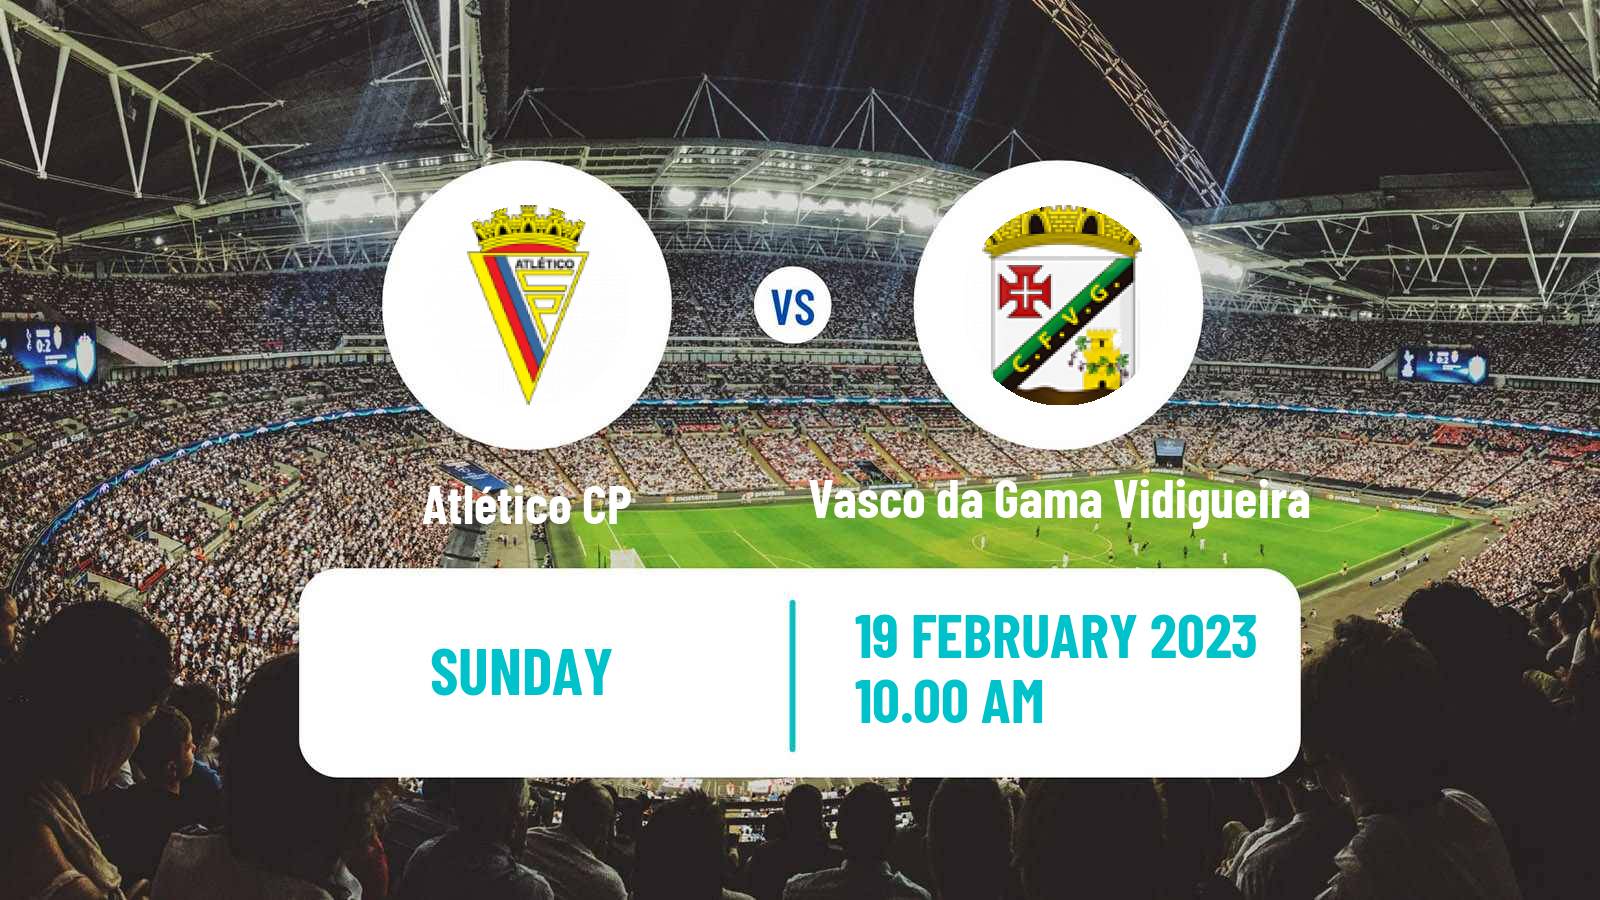 Soccer Campeonato de Portugal Atlético CP - Vasco da Gama Vidigueira